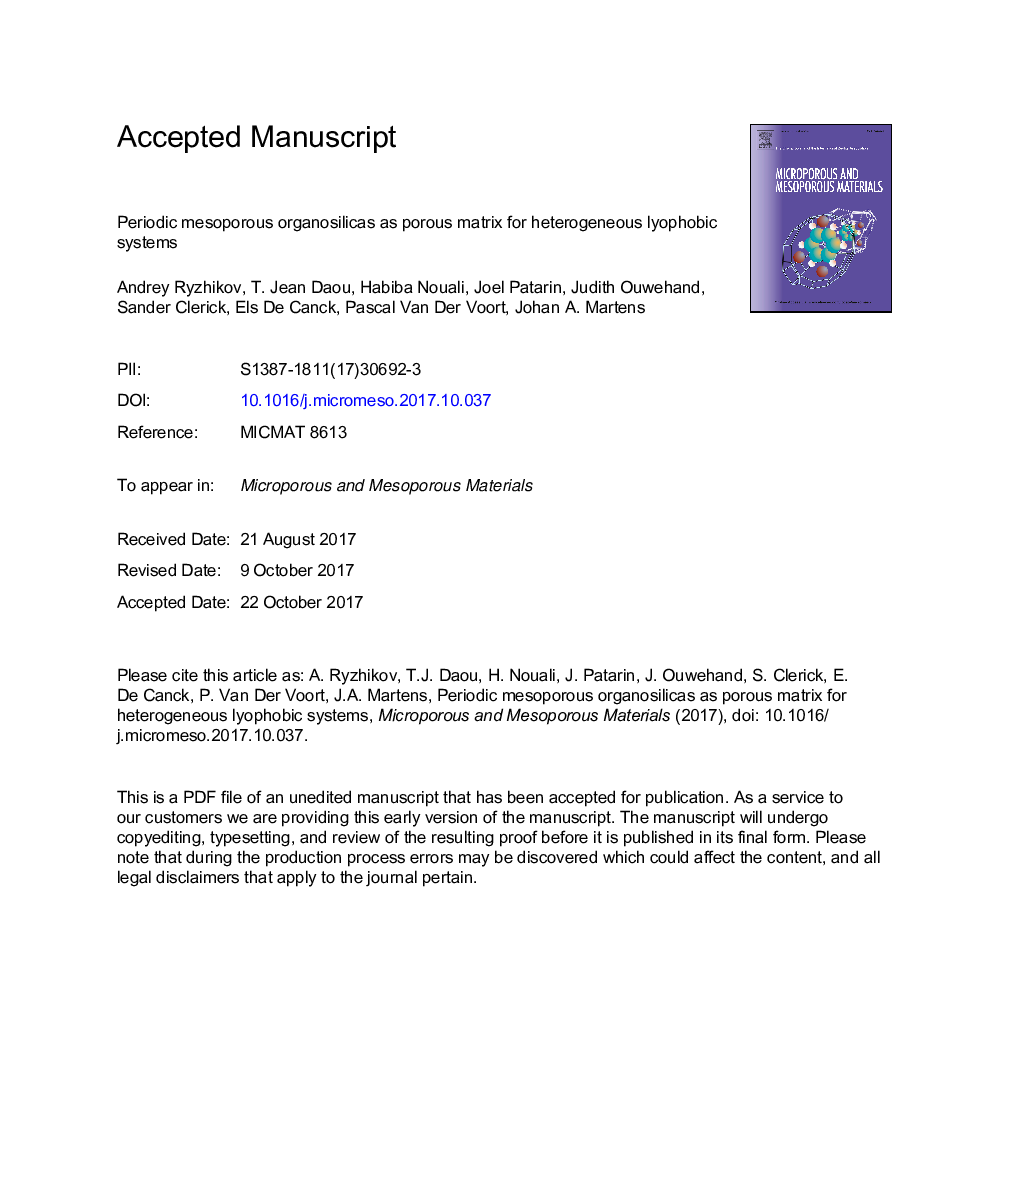 Periodic mesoporous organosilicas as porous matrix for heterogeneous lyophobic systems